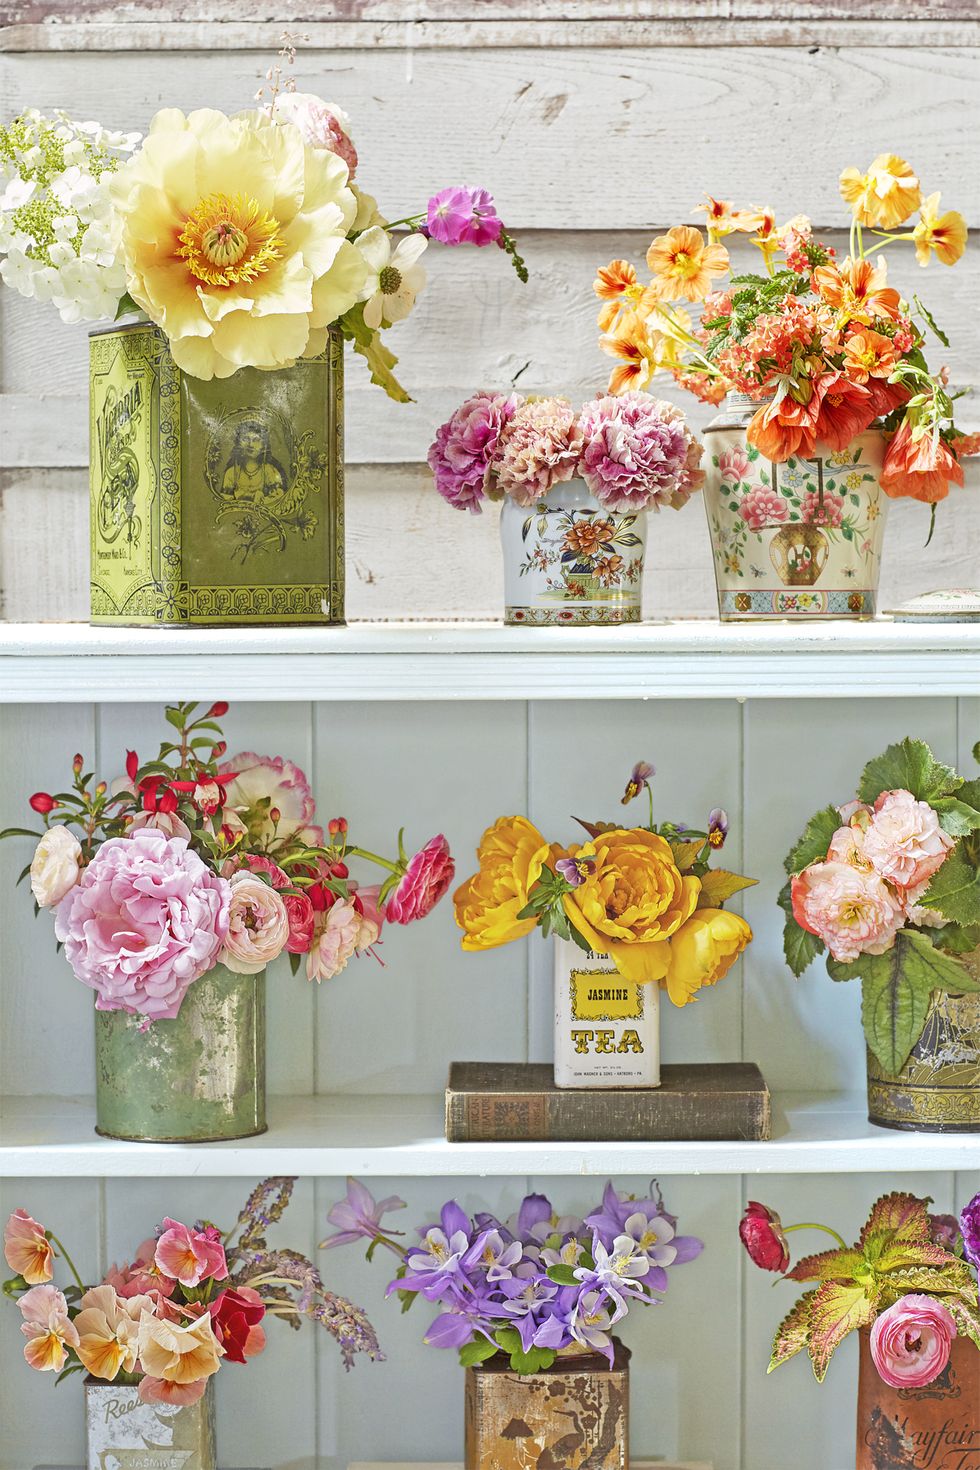 11 cách đẹp để sử dụng những món đồ cổ điển để trưng bày hoa - Ảnh 5.